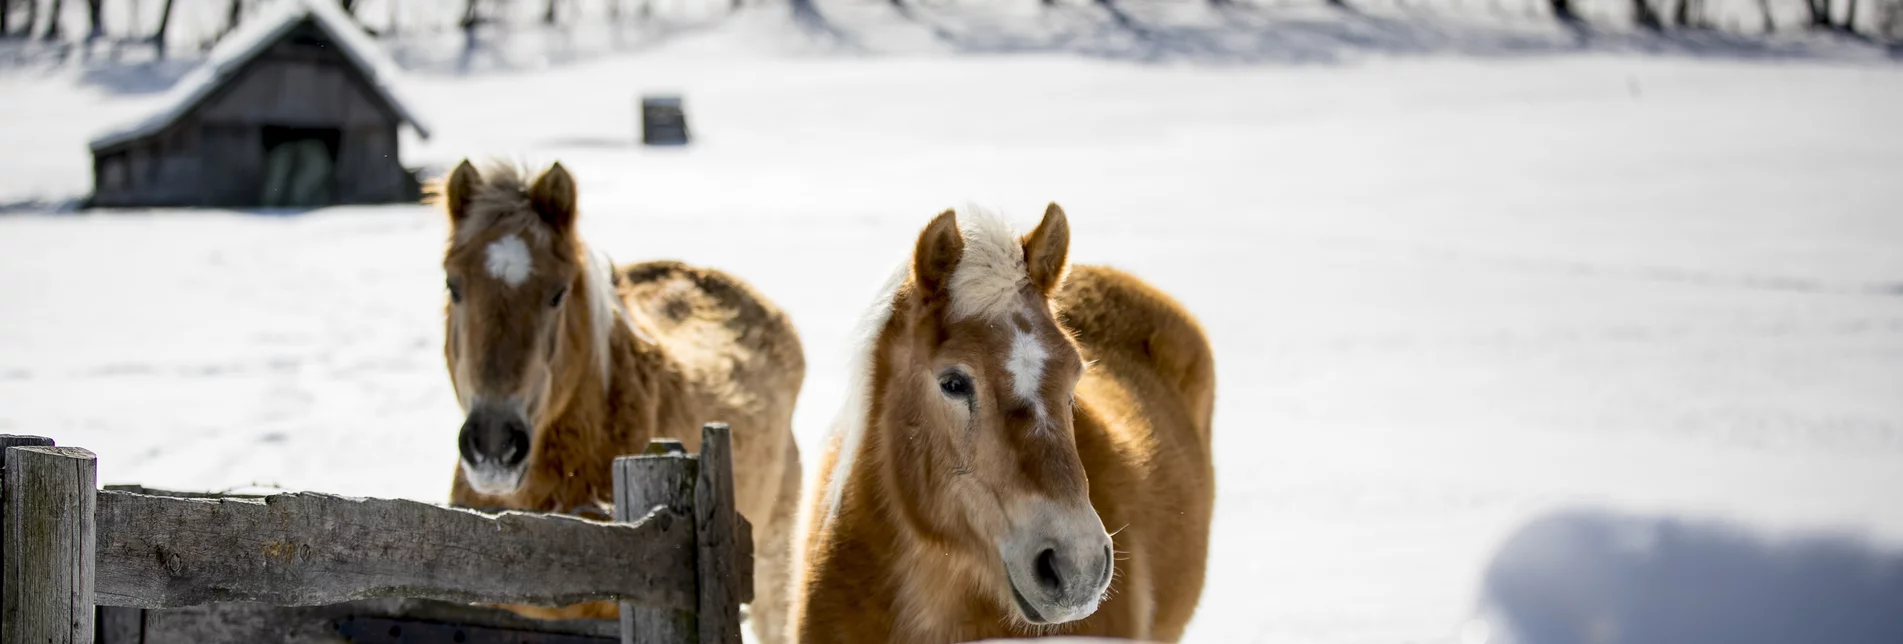 Haflinger horses on the meadow | © Steiermark Tourismus | Tom Lamm